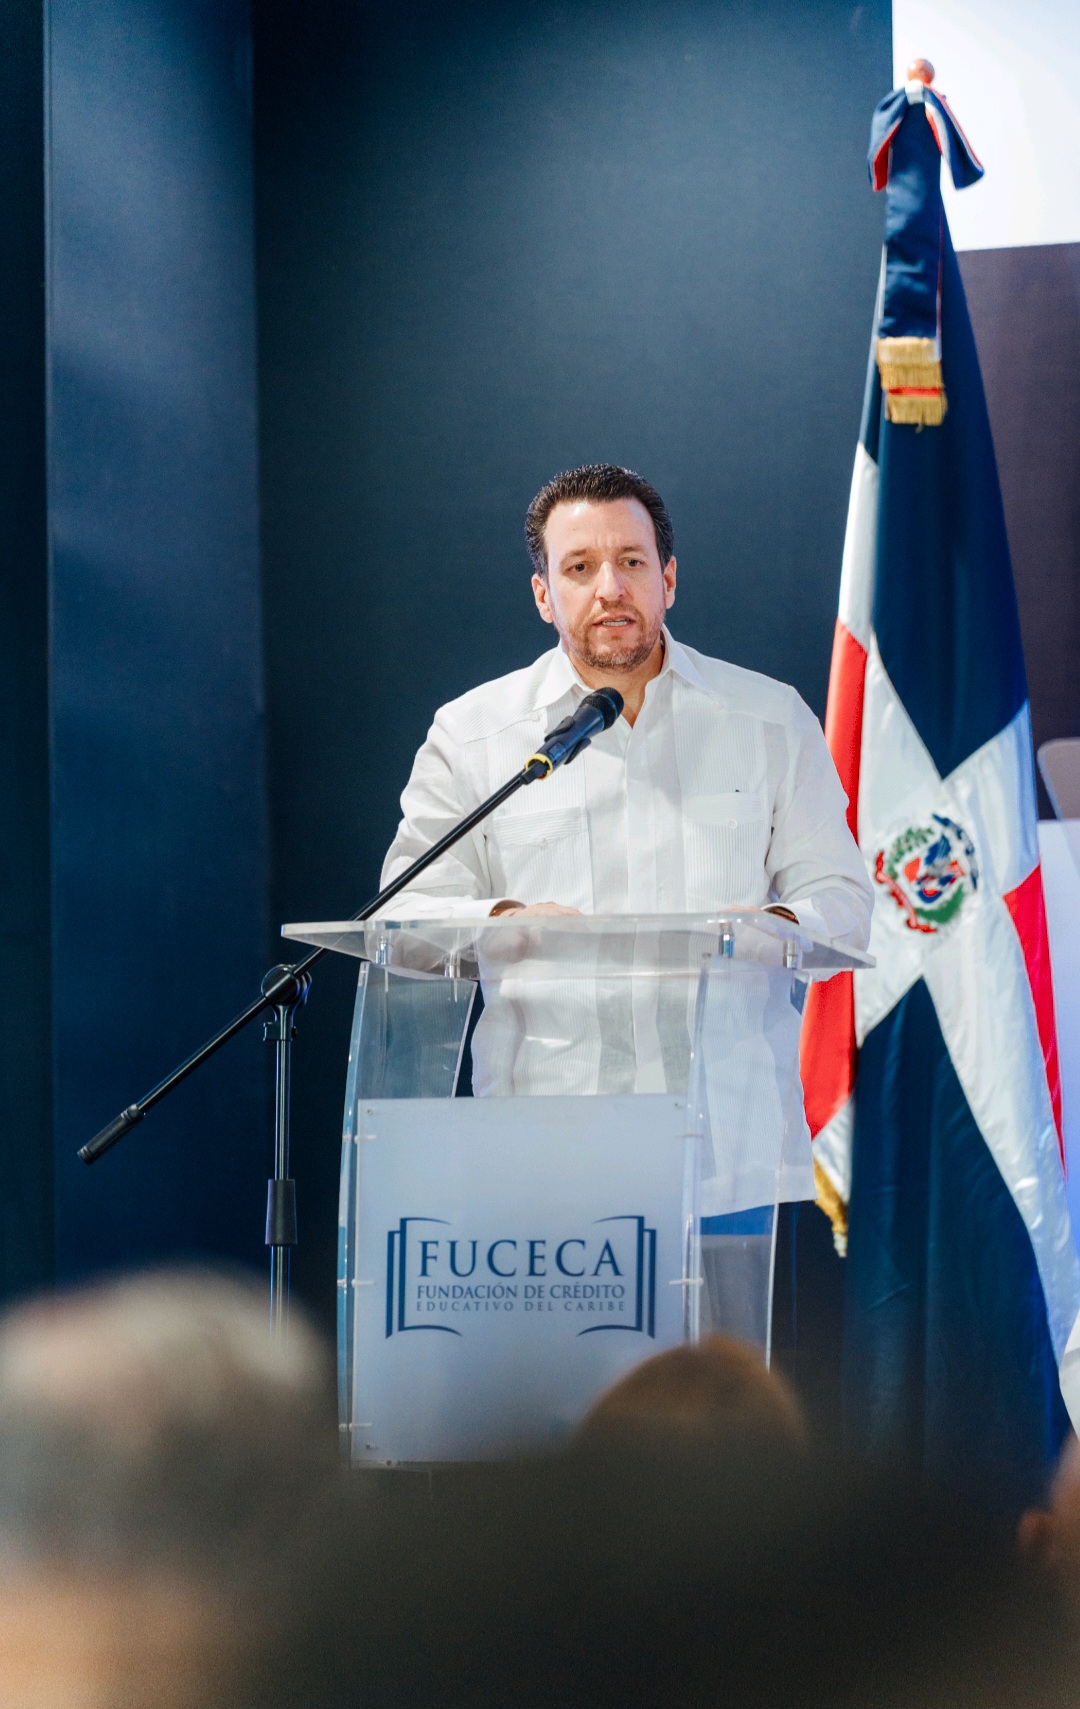 Fundación FUCECA: Nueva opción de crédito educativo de UNICARIBE 